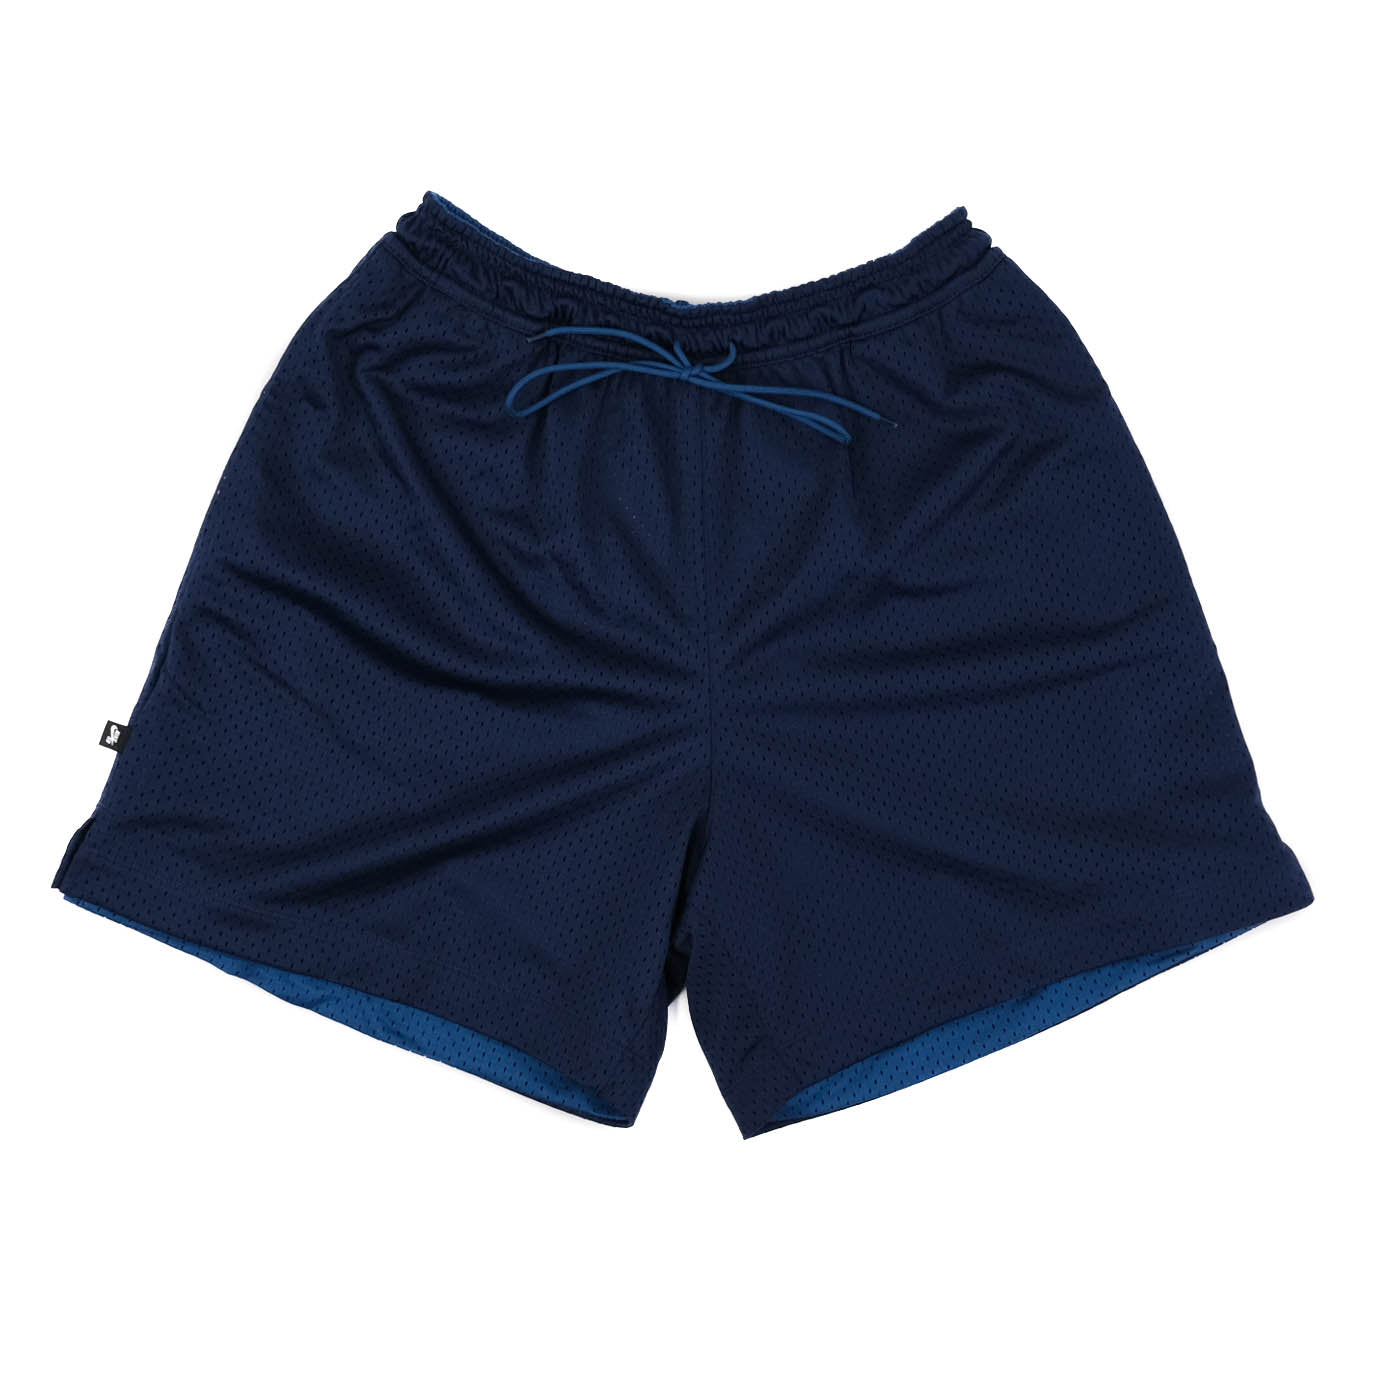 Nike SB Shorts - Midnight Navy/Court Blue